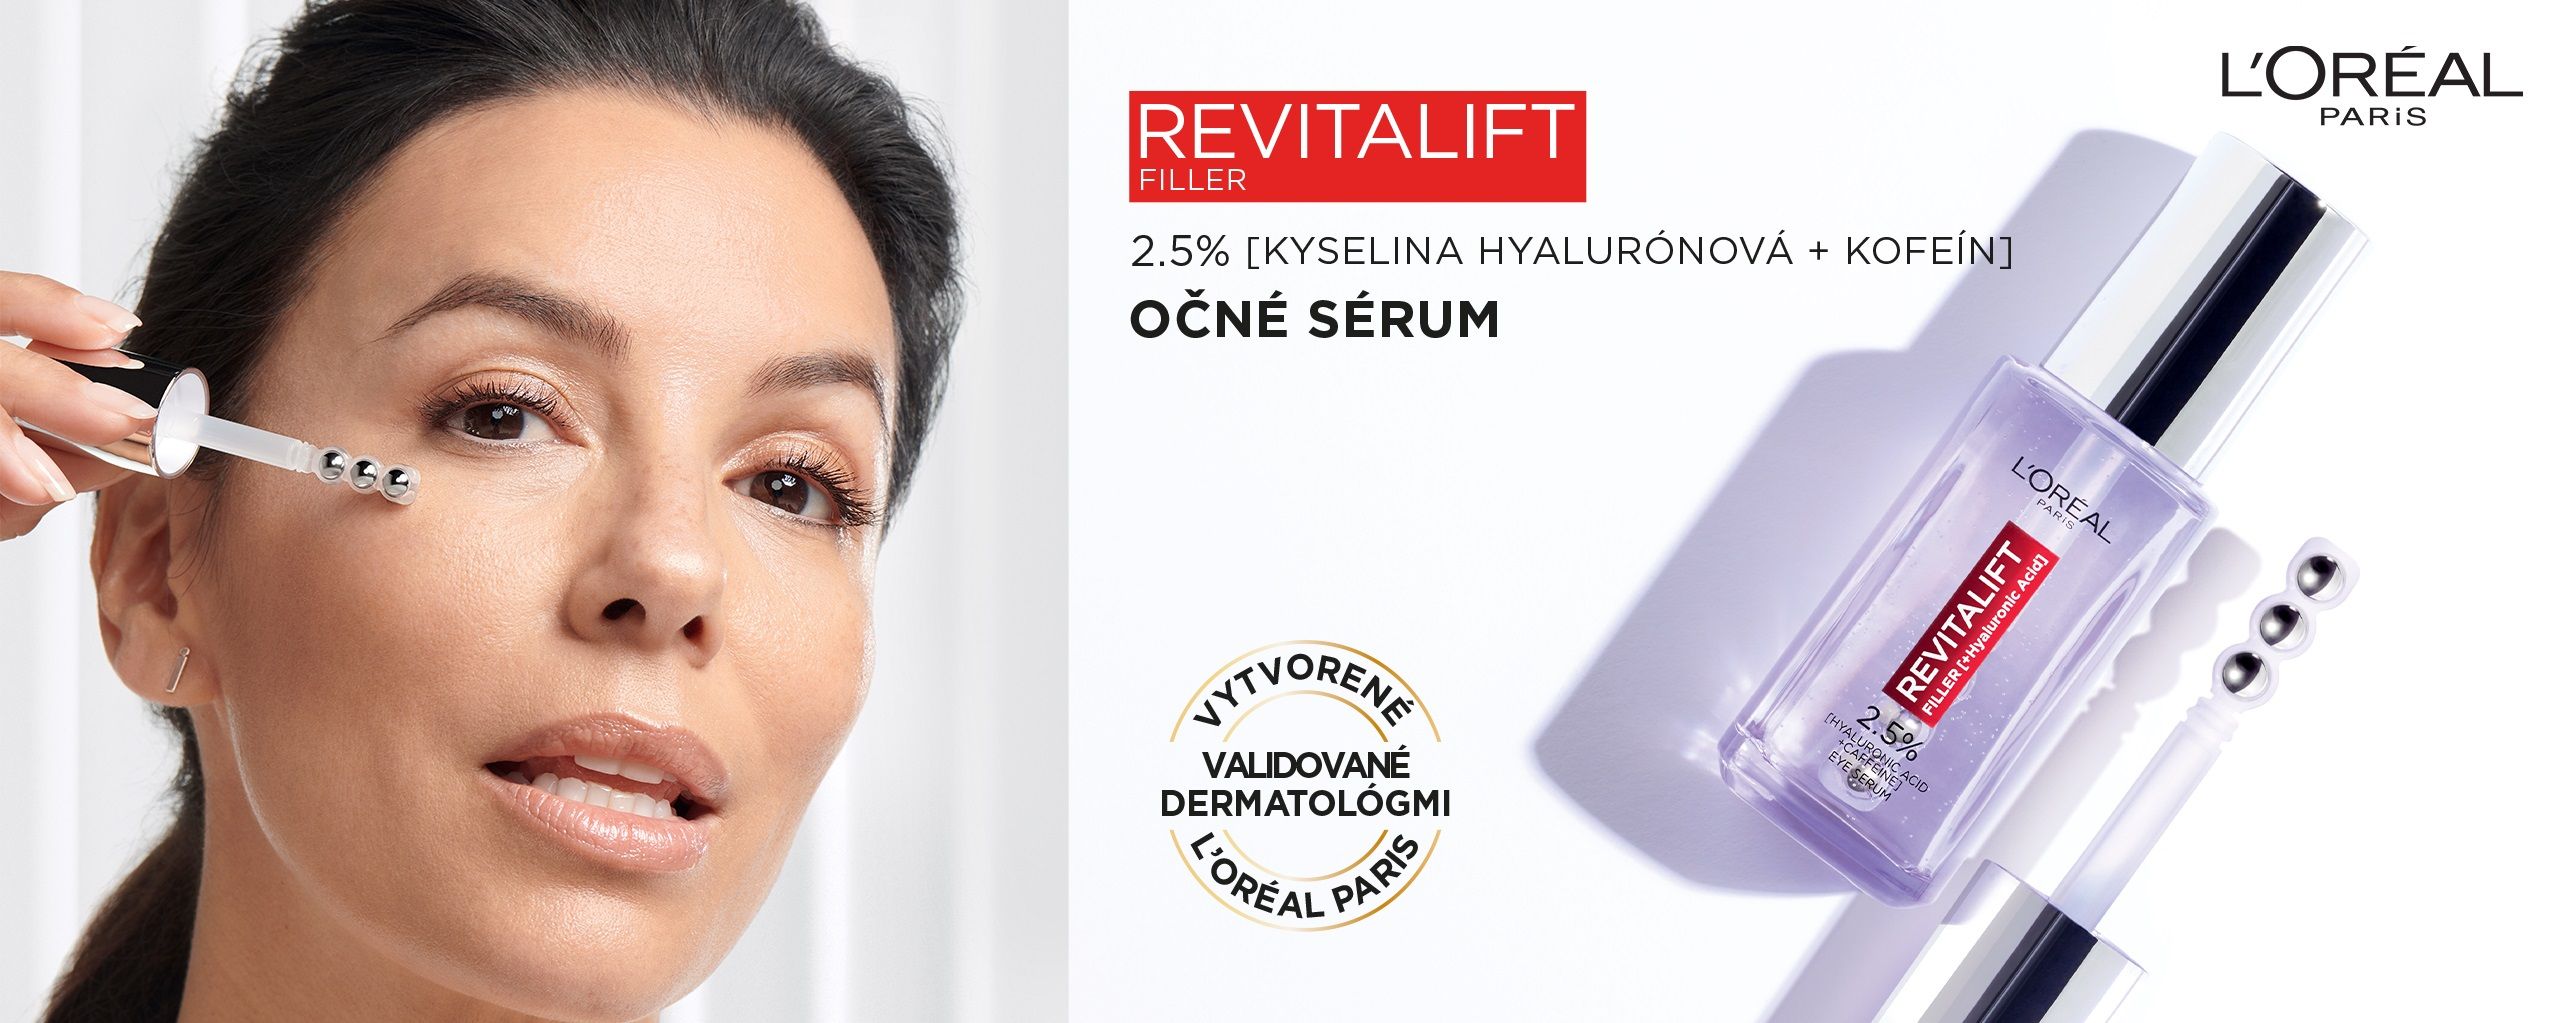 L'Oréal Paris Revitalift Filler oční sérum s 2,5% kyselinou hyaluronovou 